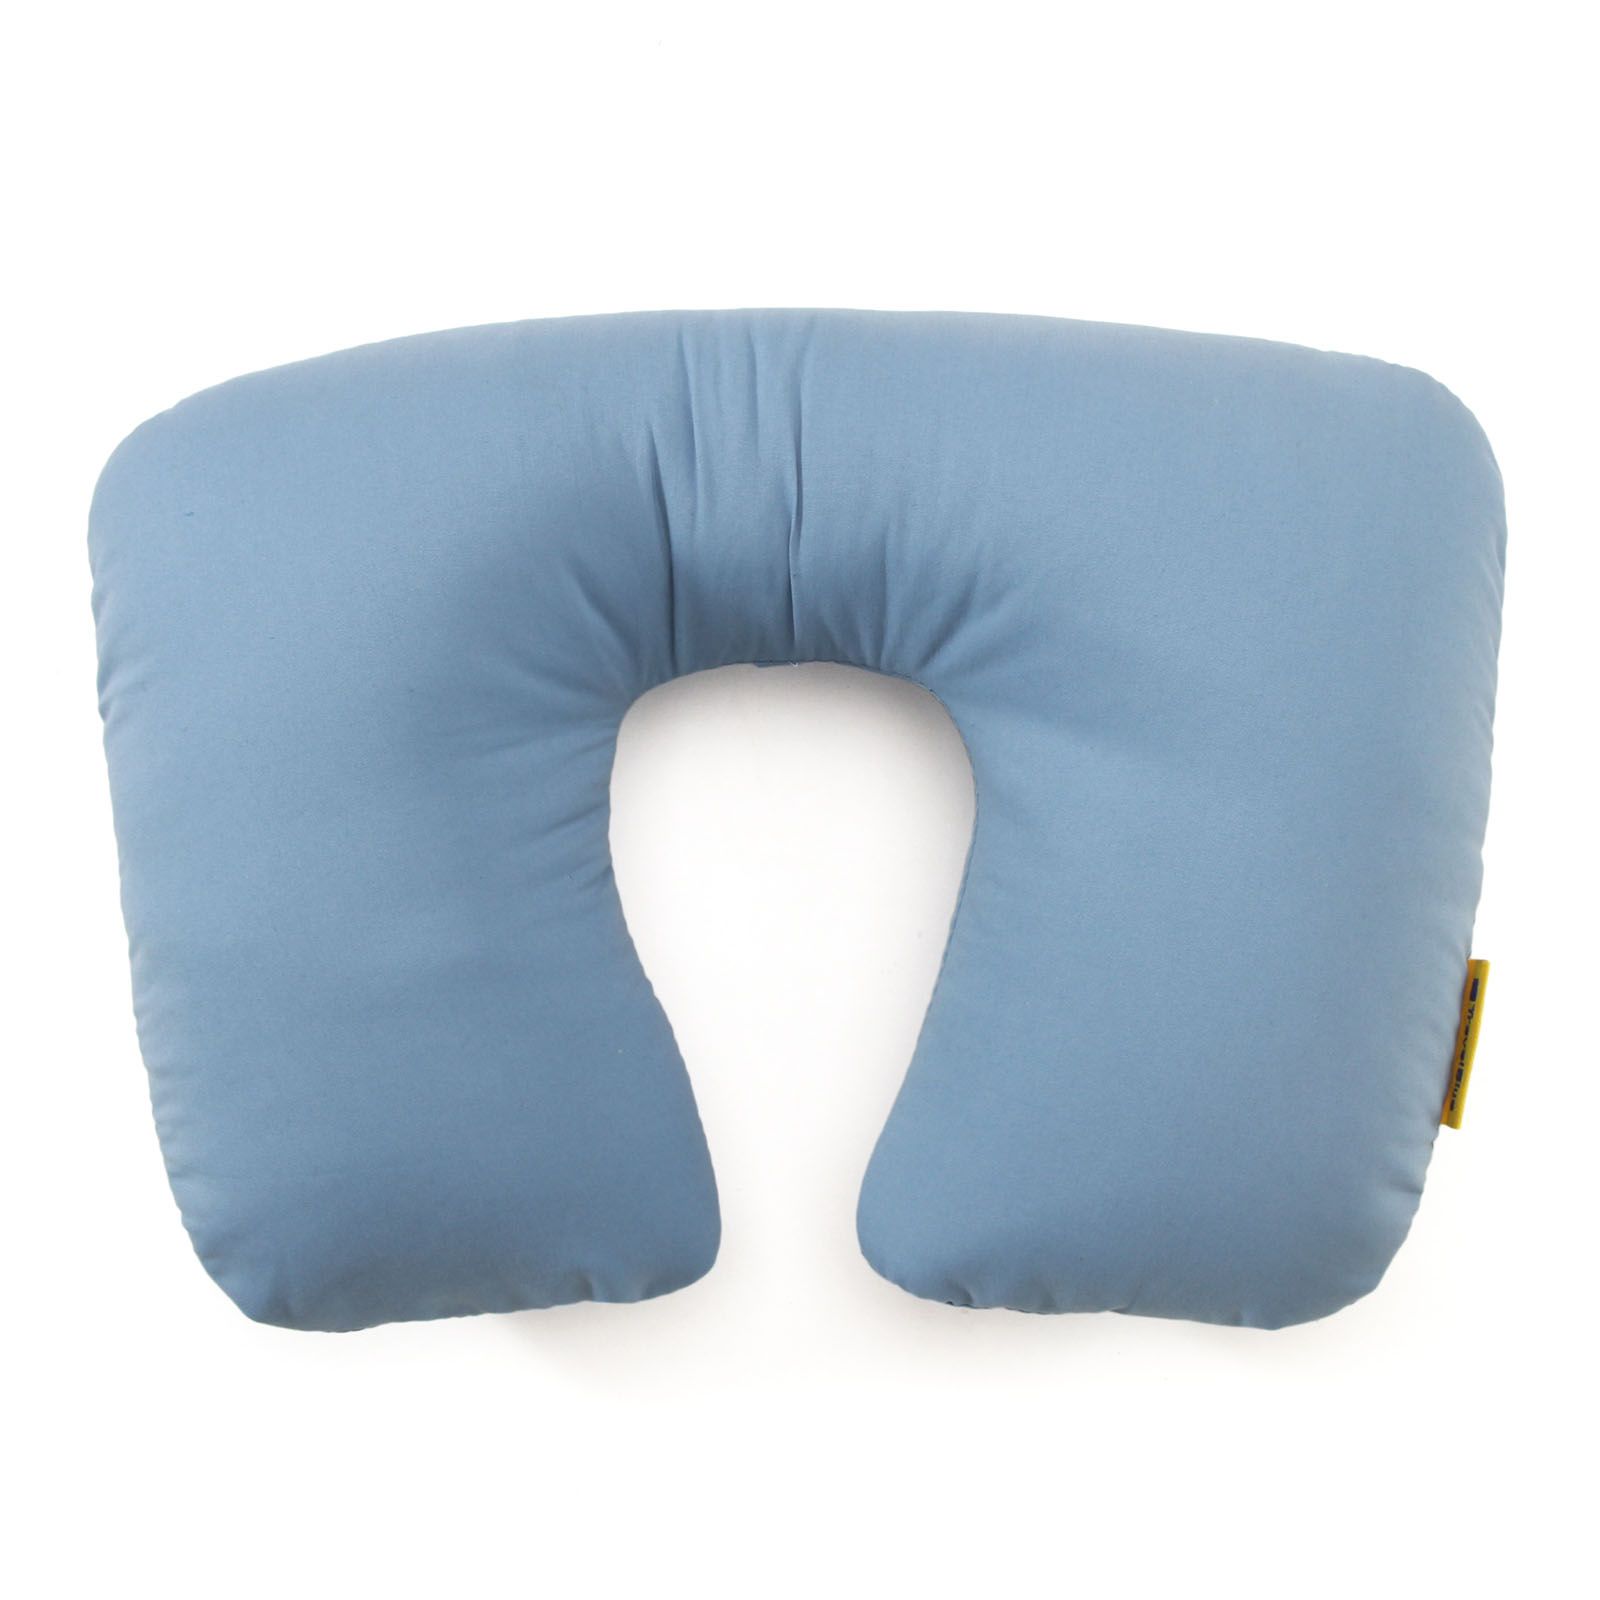 Купить надувную подушку для путешествий. Travel Blue подушка. Travel Blue подушка для путешествий. Подушка надувная туристическая. Подушка для путешествий детская.